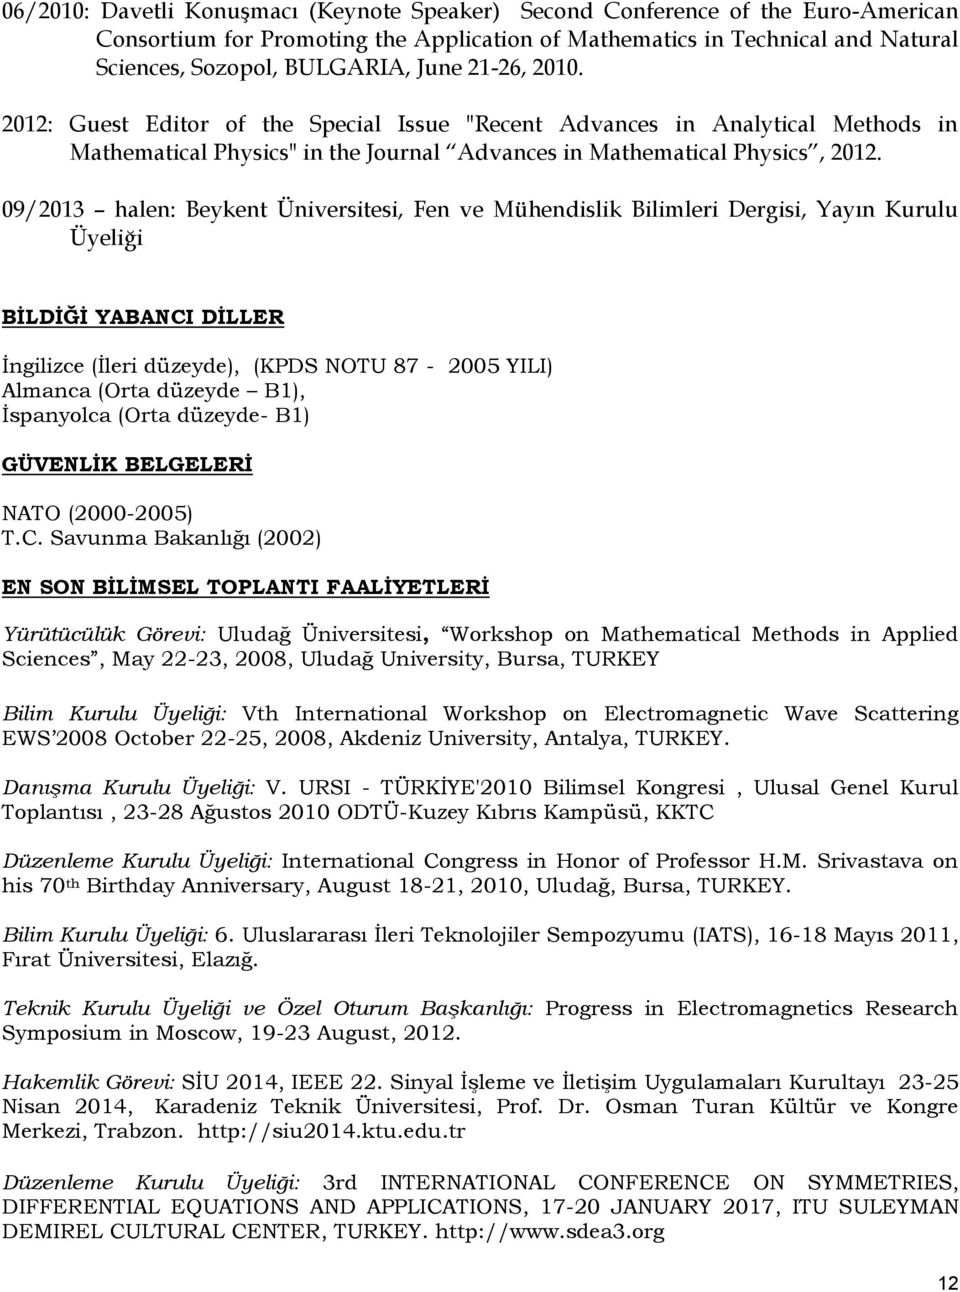 09/2013 halen: Beykent Üniversitesi, Fen ve Mühendislik Bilimleri Dergisi, Yayın Kurulu Üyeliği BİLDİĞİ YABANCI DİLLER İngilizce (İleri düzeyde), (KPDS NOTU 87-2005 YILI) Almanca (Orta düzeyde B1),